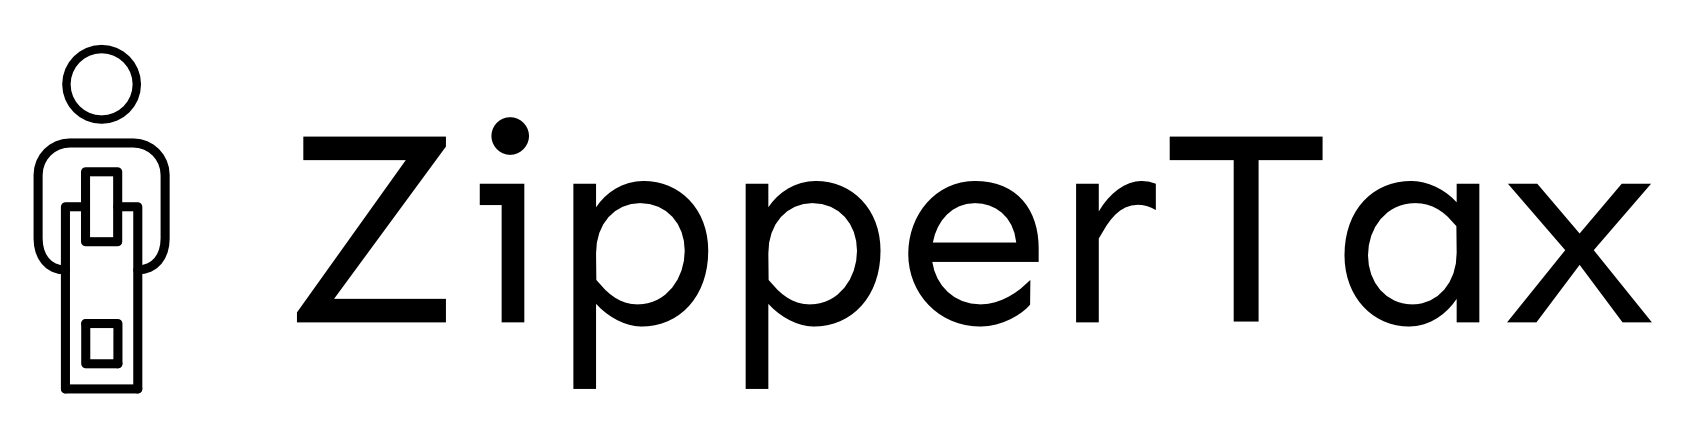 ZipperTax logo